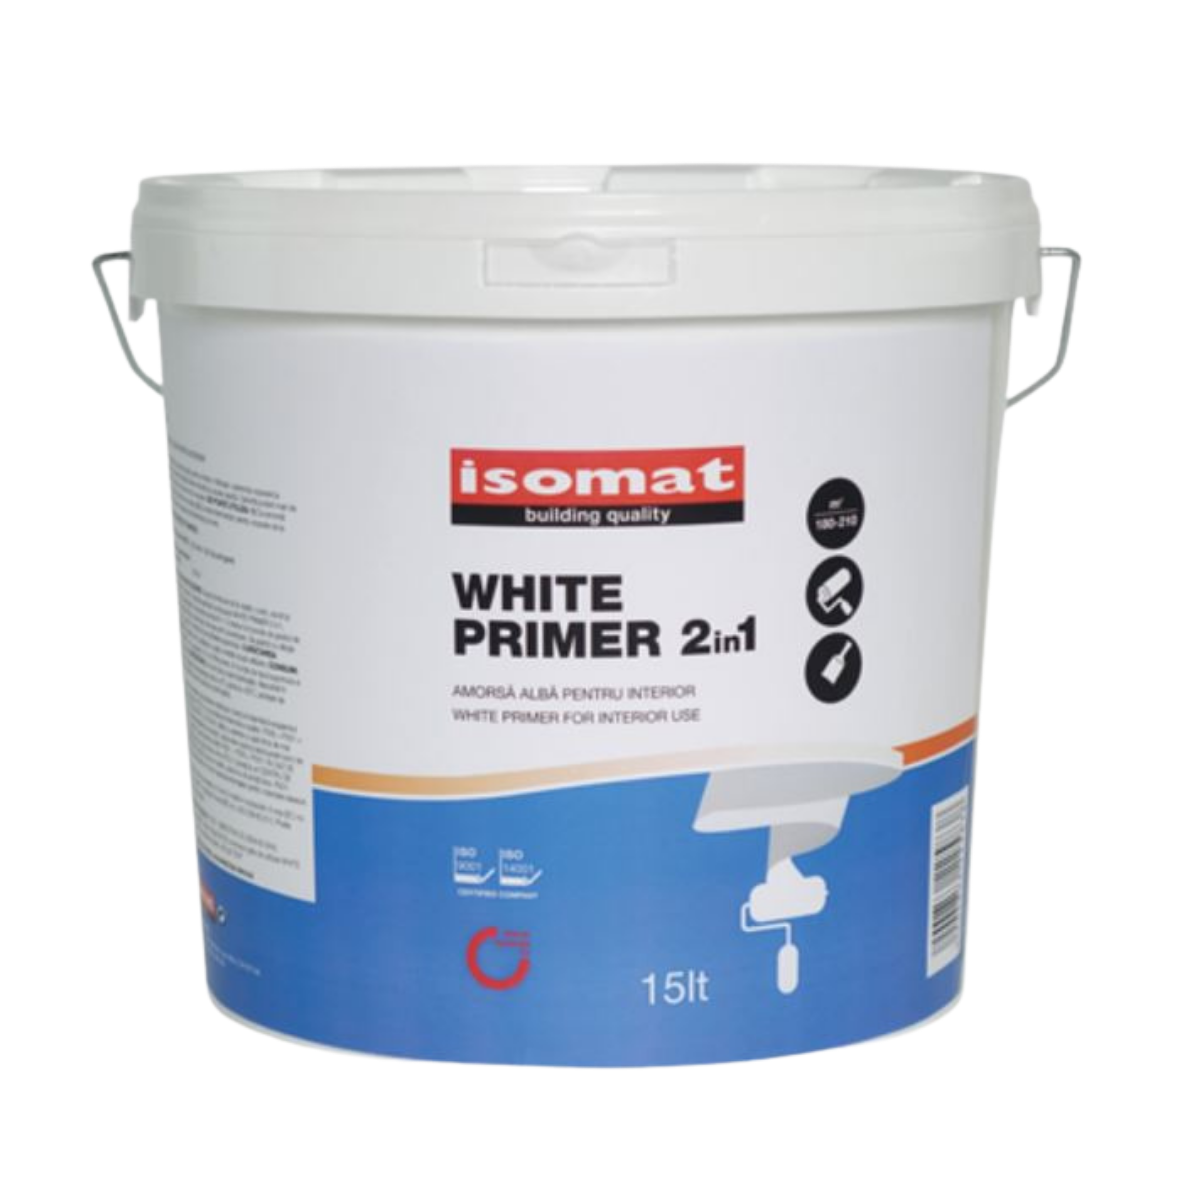 Paint primers - Primer Isomat White Primer 2in1 15L, https:maxbau.ro